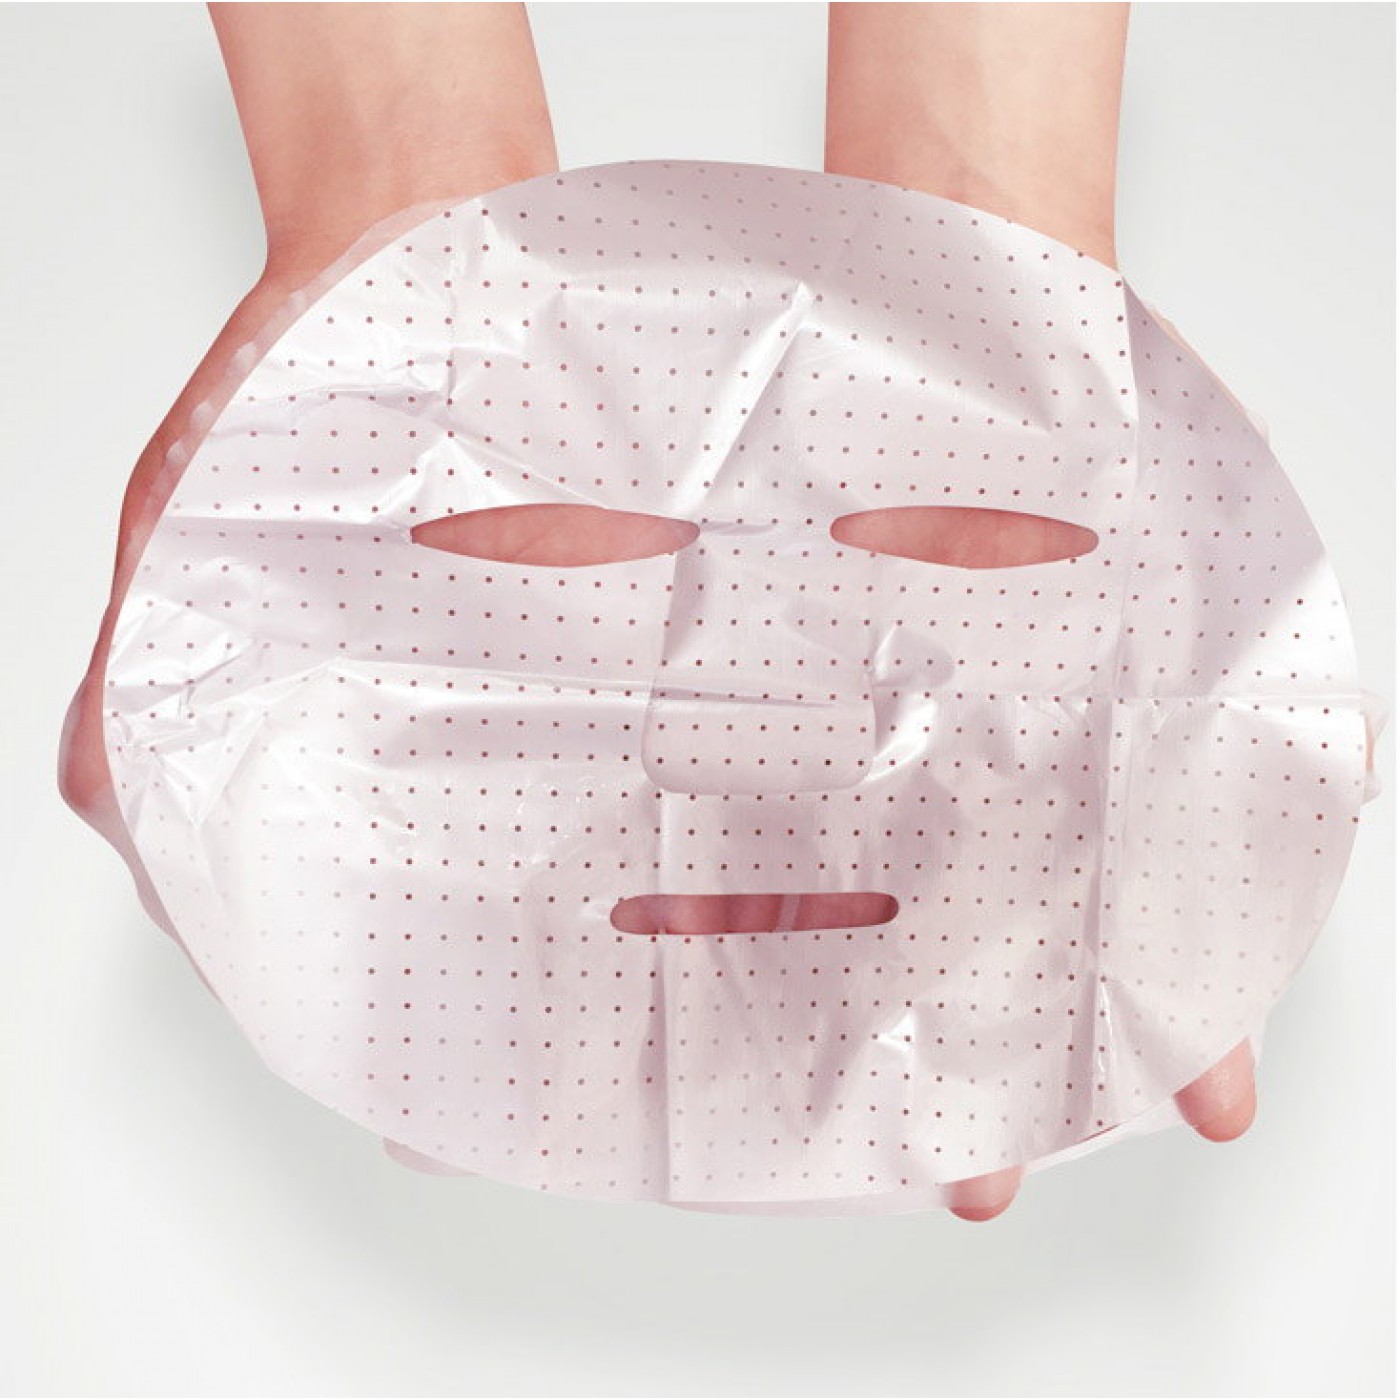 Упаковка для тканевых масок. Маска для лица. Тканевые маски для лица. Маски для лица упаковка. Матерчатая маска для лица.